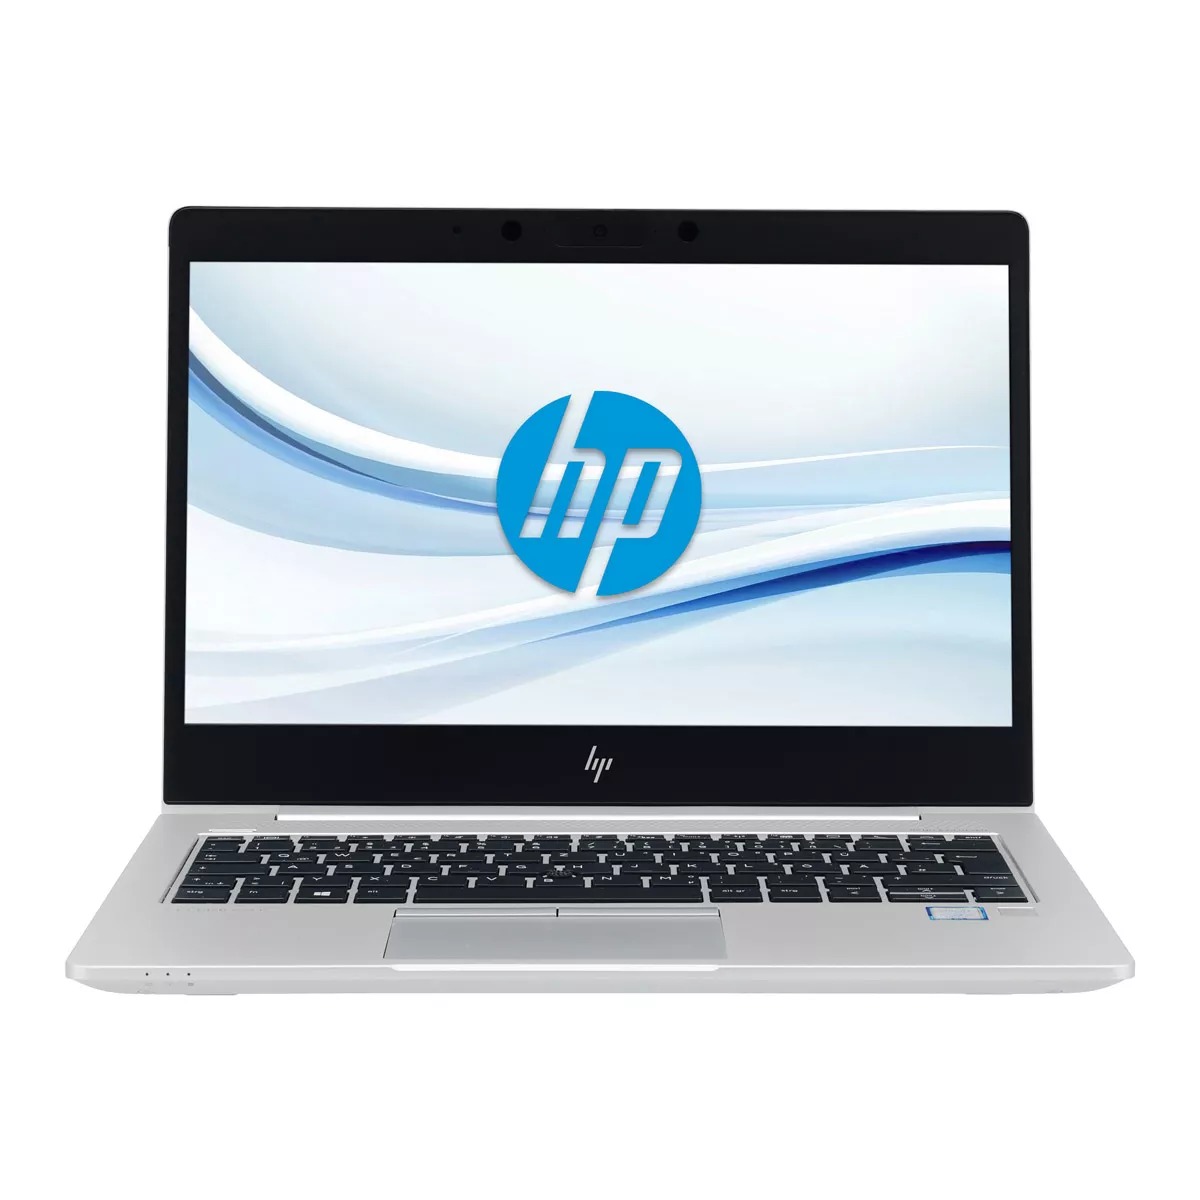 HP EliteBook 830 G5 Core i5 8250U Full-HD 240 GB M.2 SSD Webcam A